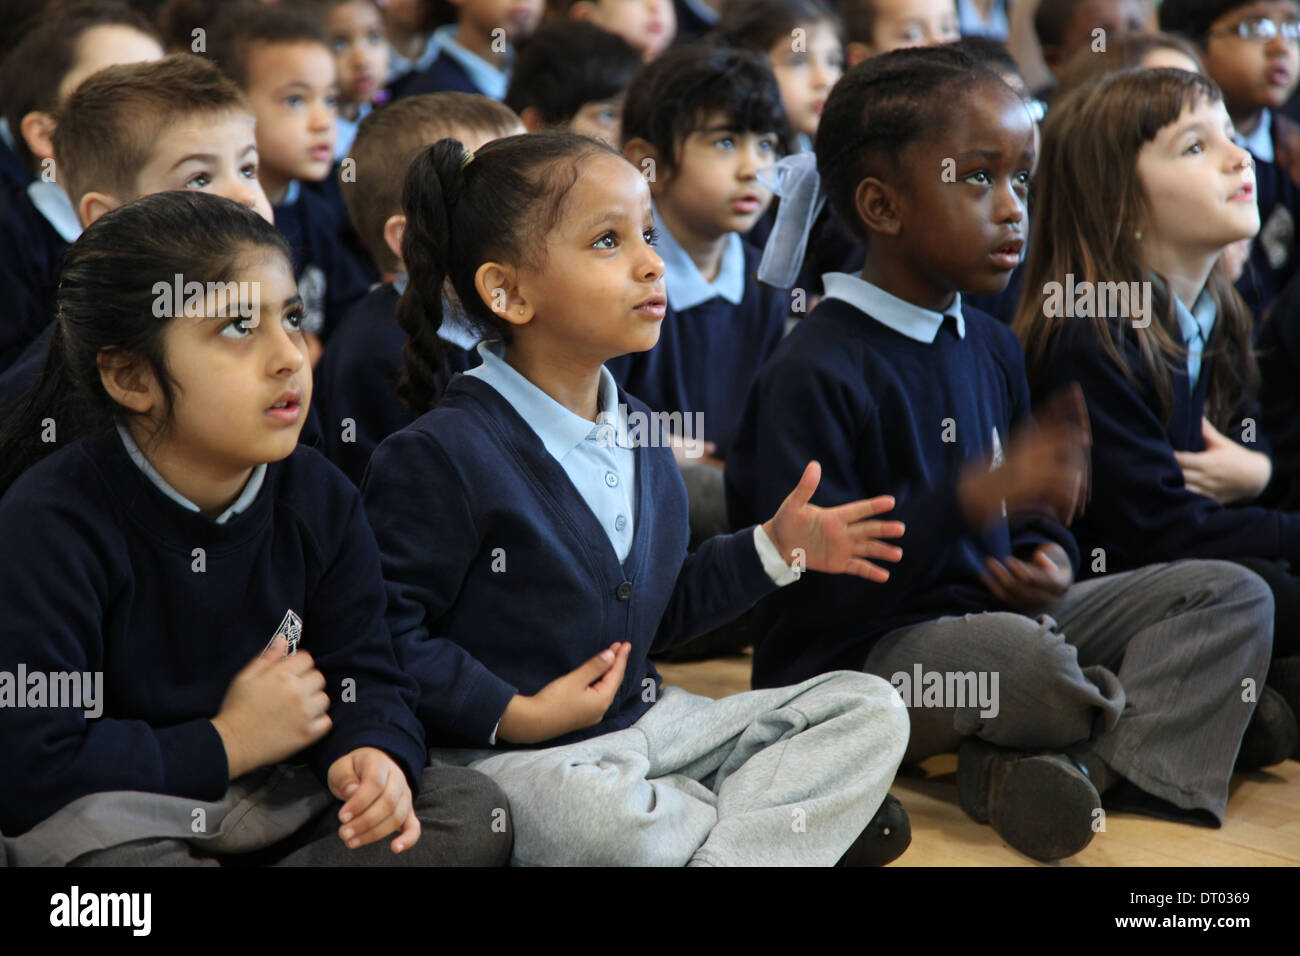 Niños en una escuela general cantando, aplaudiendo y realizar acciones Foto de stock